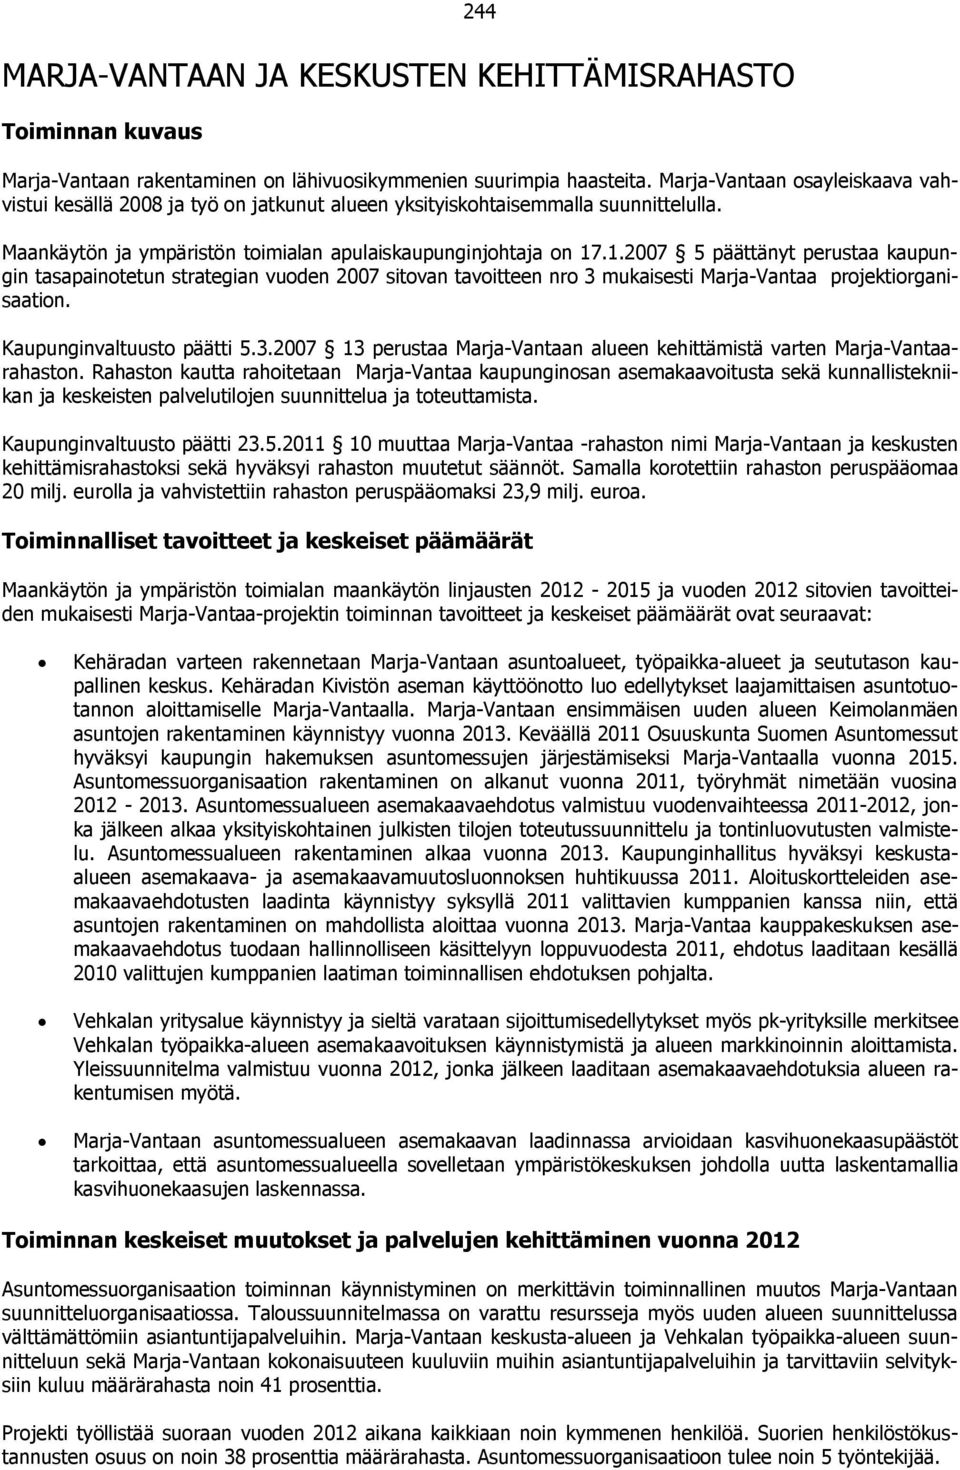 .1.2007 5 päättänyt perustaa kaupungin tasapainotetun strategian vuoden 2007 sitovan tavoitteen nro 3 mukaisesti Marja-Vantaa projektiorganisaation. Kaupunginvaltuusto päätti 5.3.2007 13 perustaa Marja-Vantaan alueen kehittämistä varten Marja-Vantaarahaston.